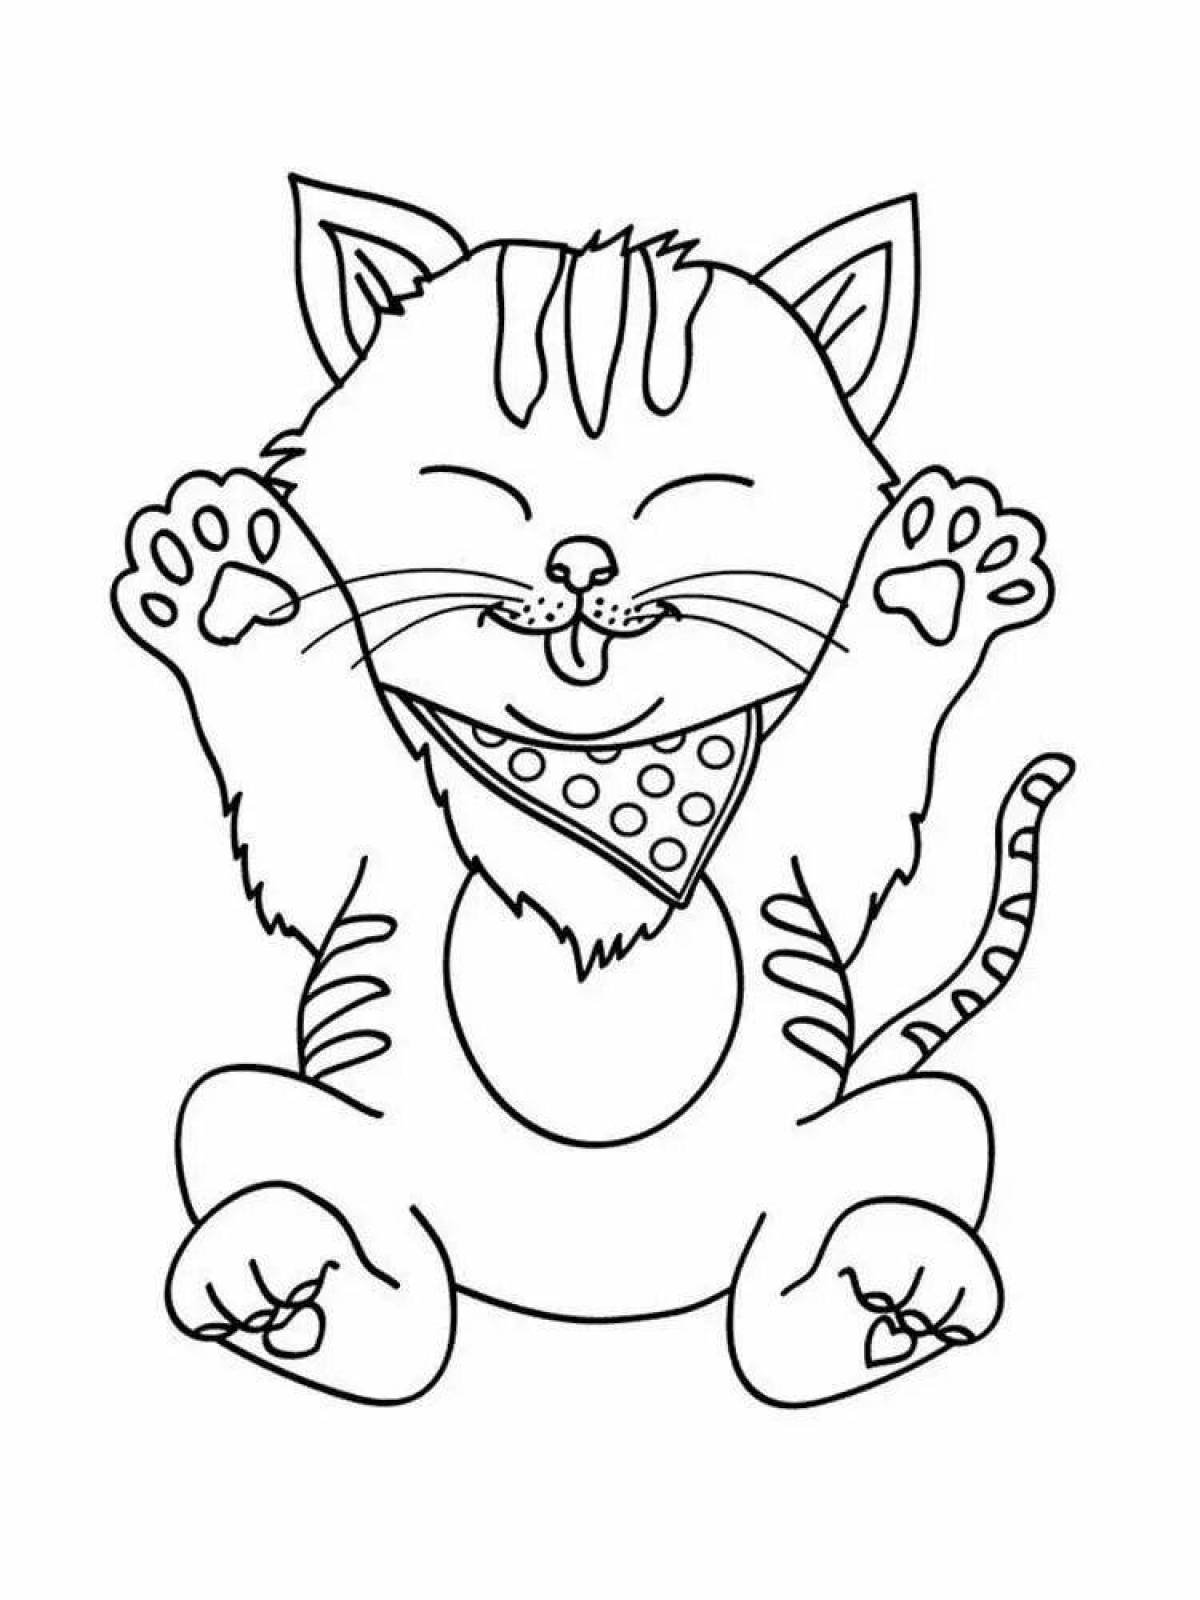 Комическая раскраска смешные кошки